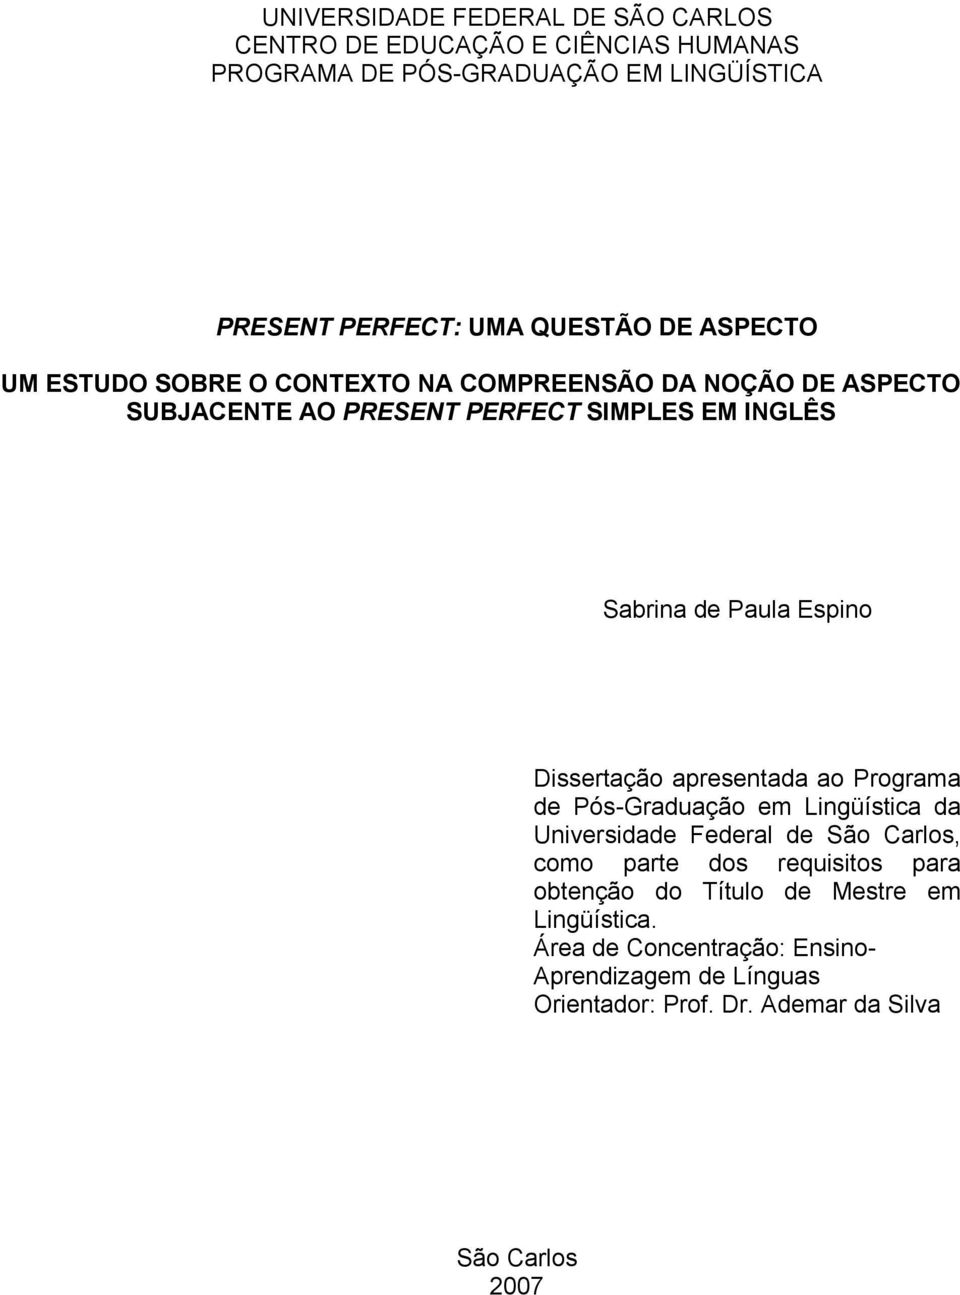 Dissertação apresentada ao Programa de Pós-Graduação em Lingüística da Universidade Federal de São Carlos, como parte dos requisitos para